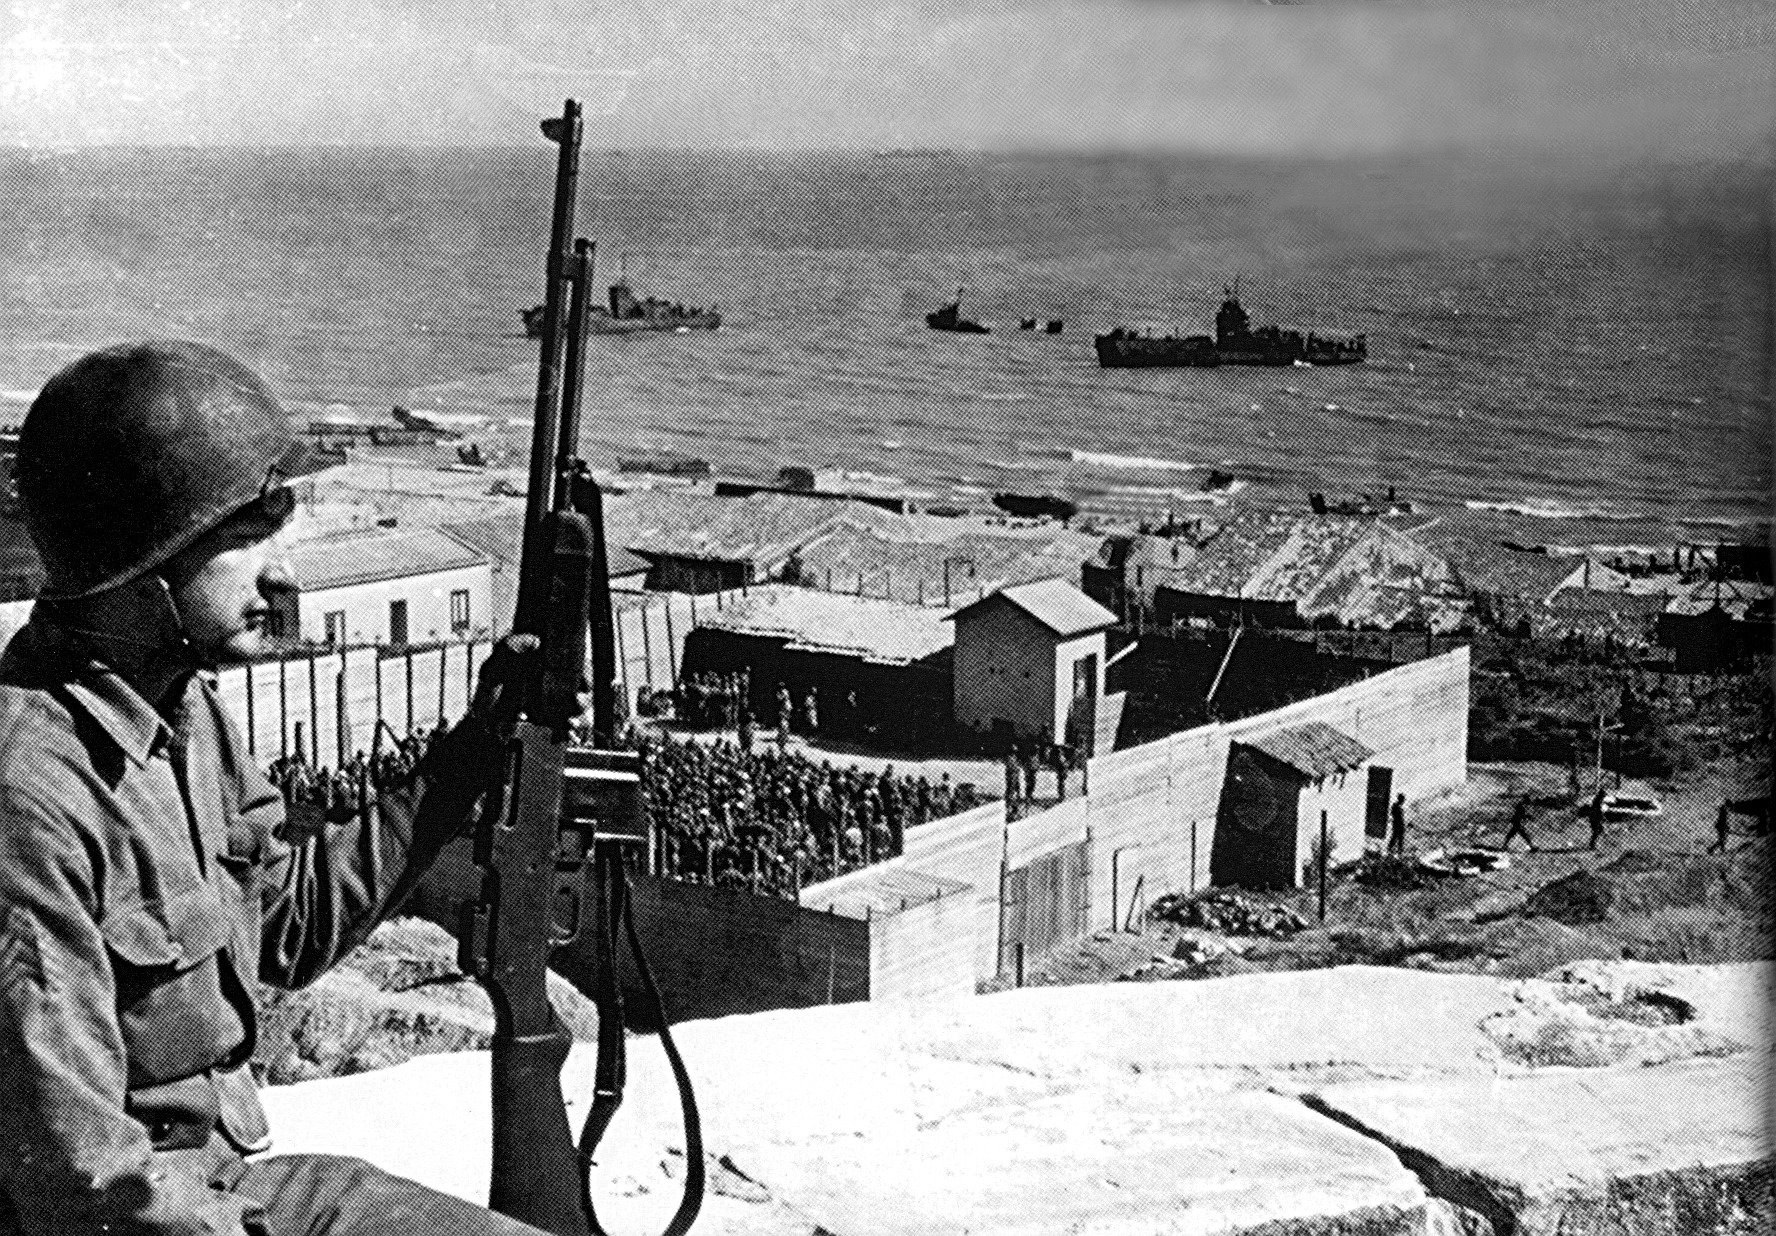 Sbarco in Sicilia - Gela 1943